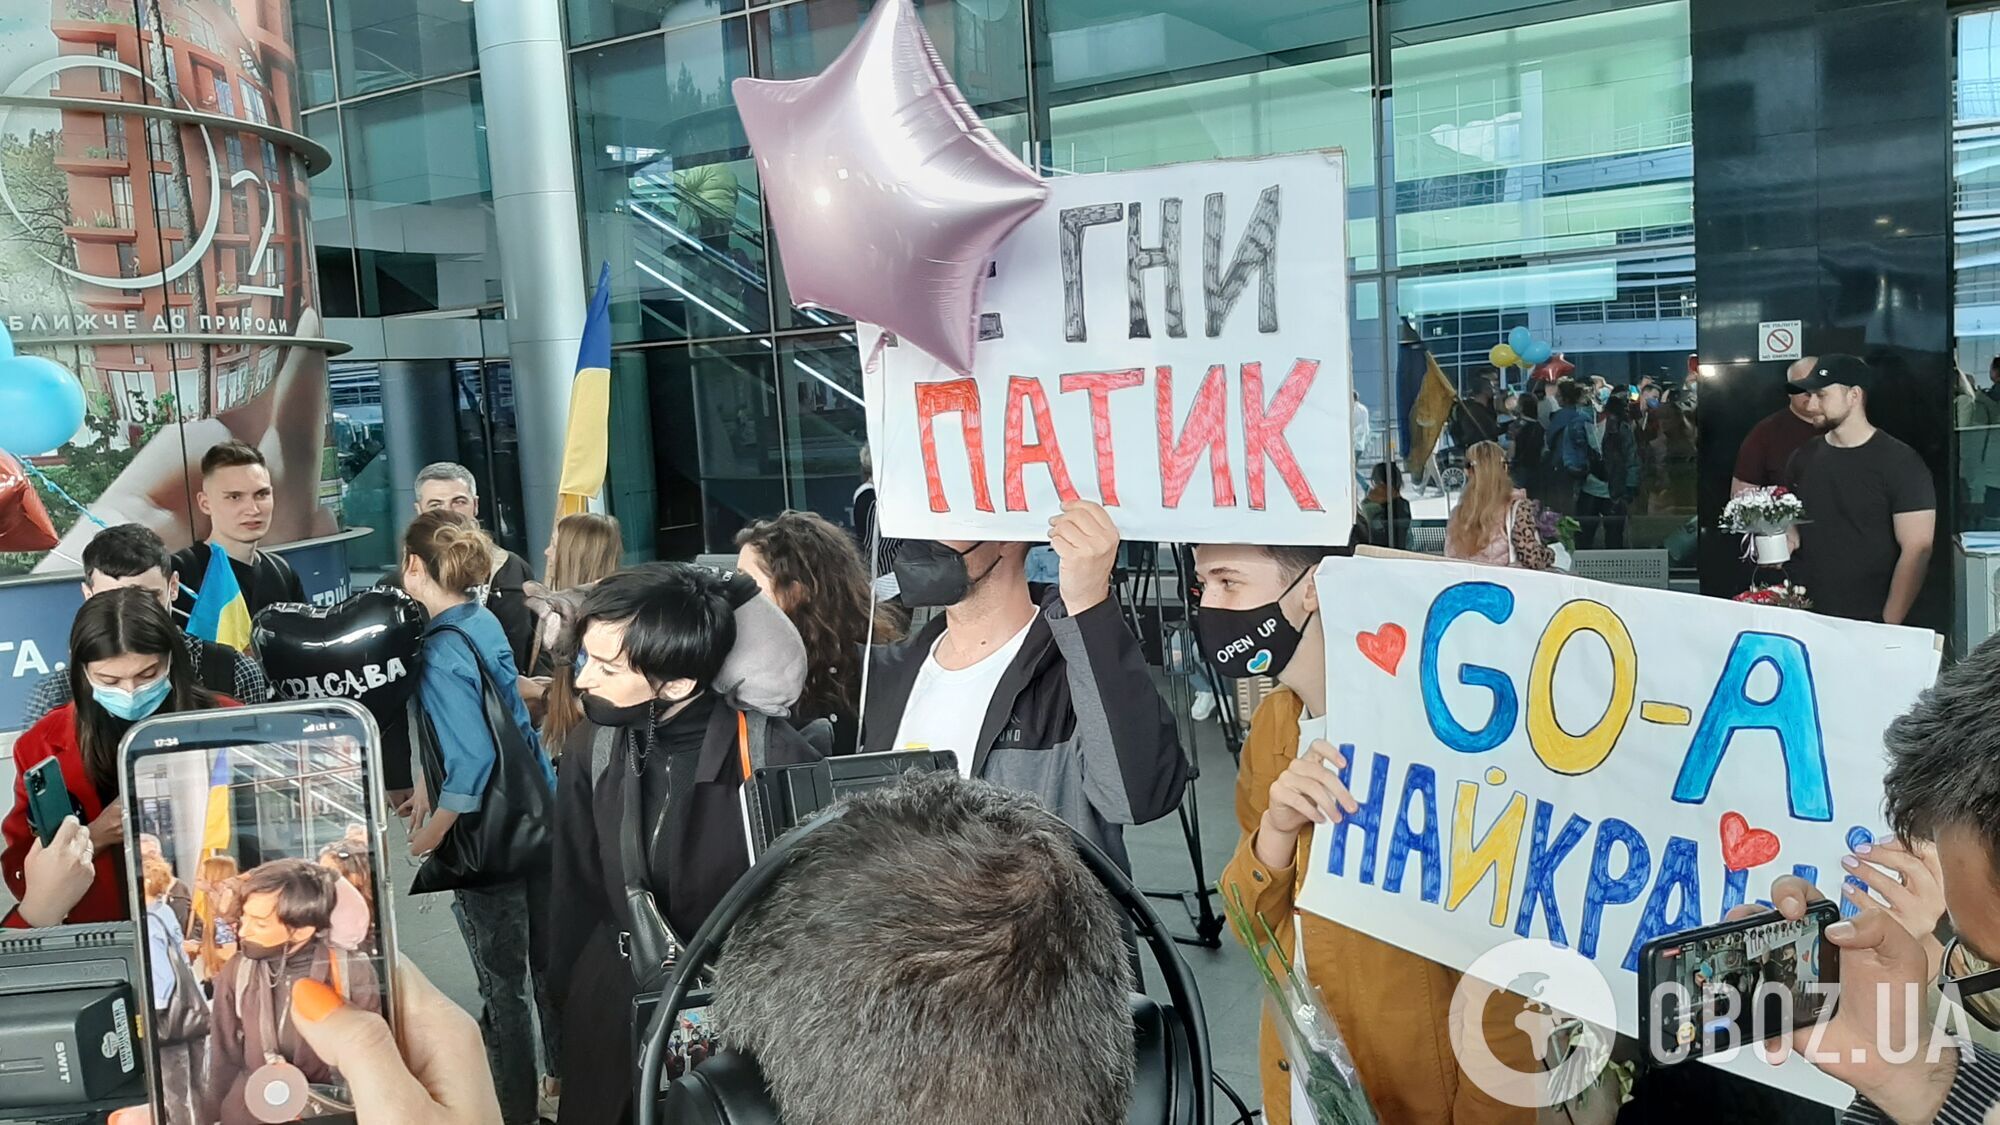 Go_A повернулися з Євробачення 2021, українці влаштували теплий прийом в аеропорту: фото і відео